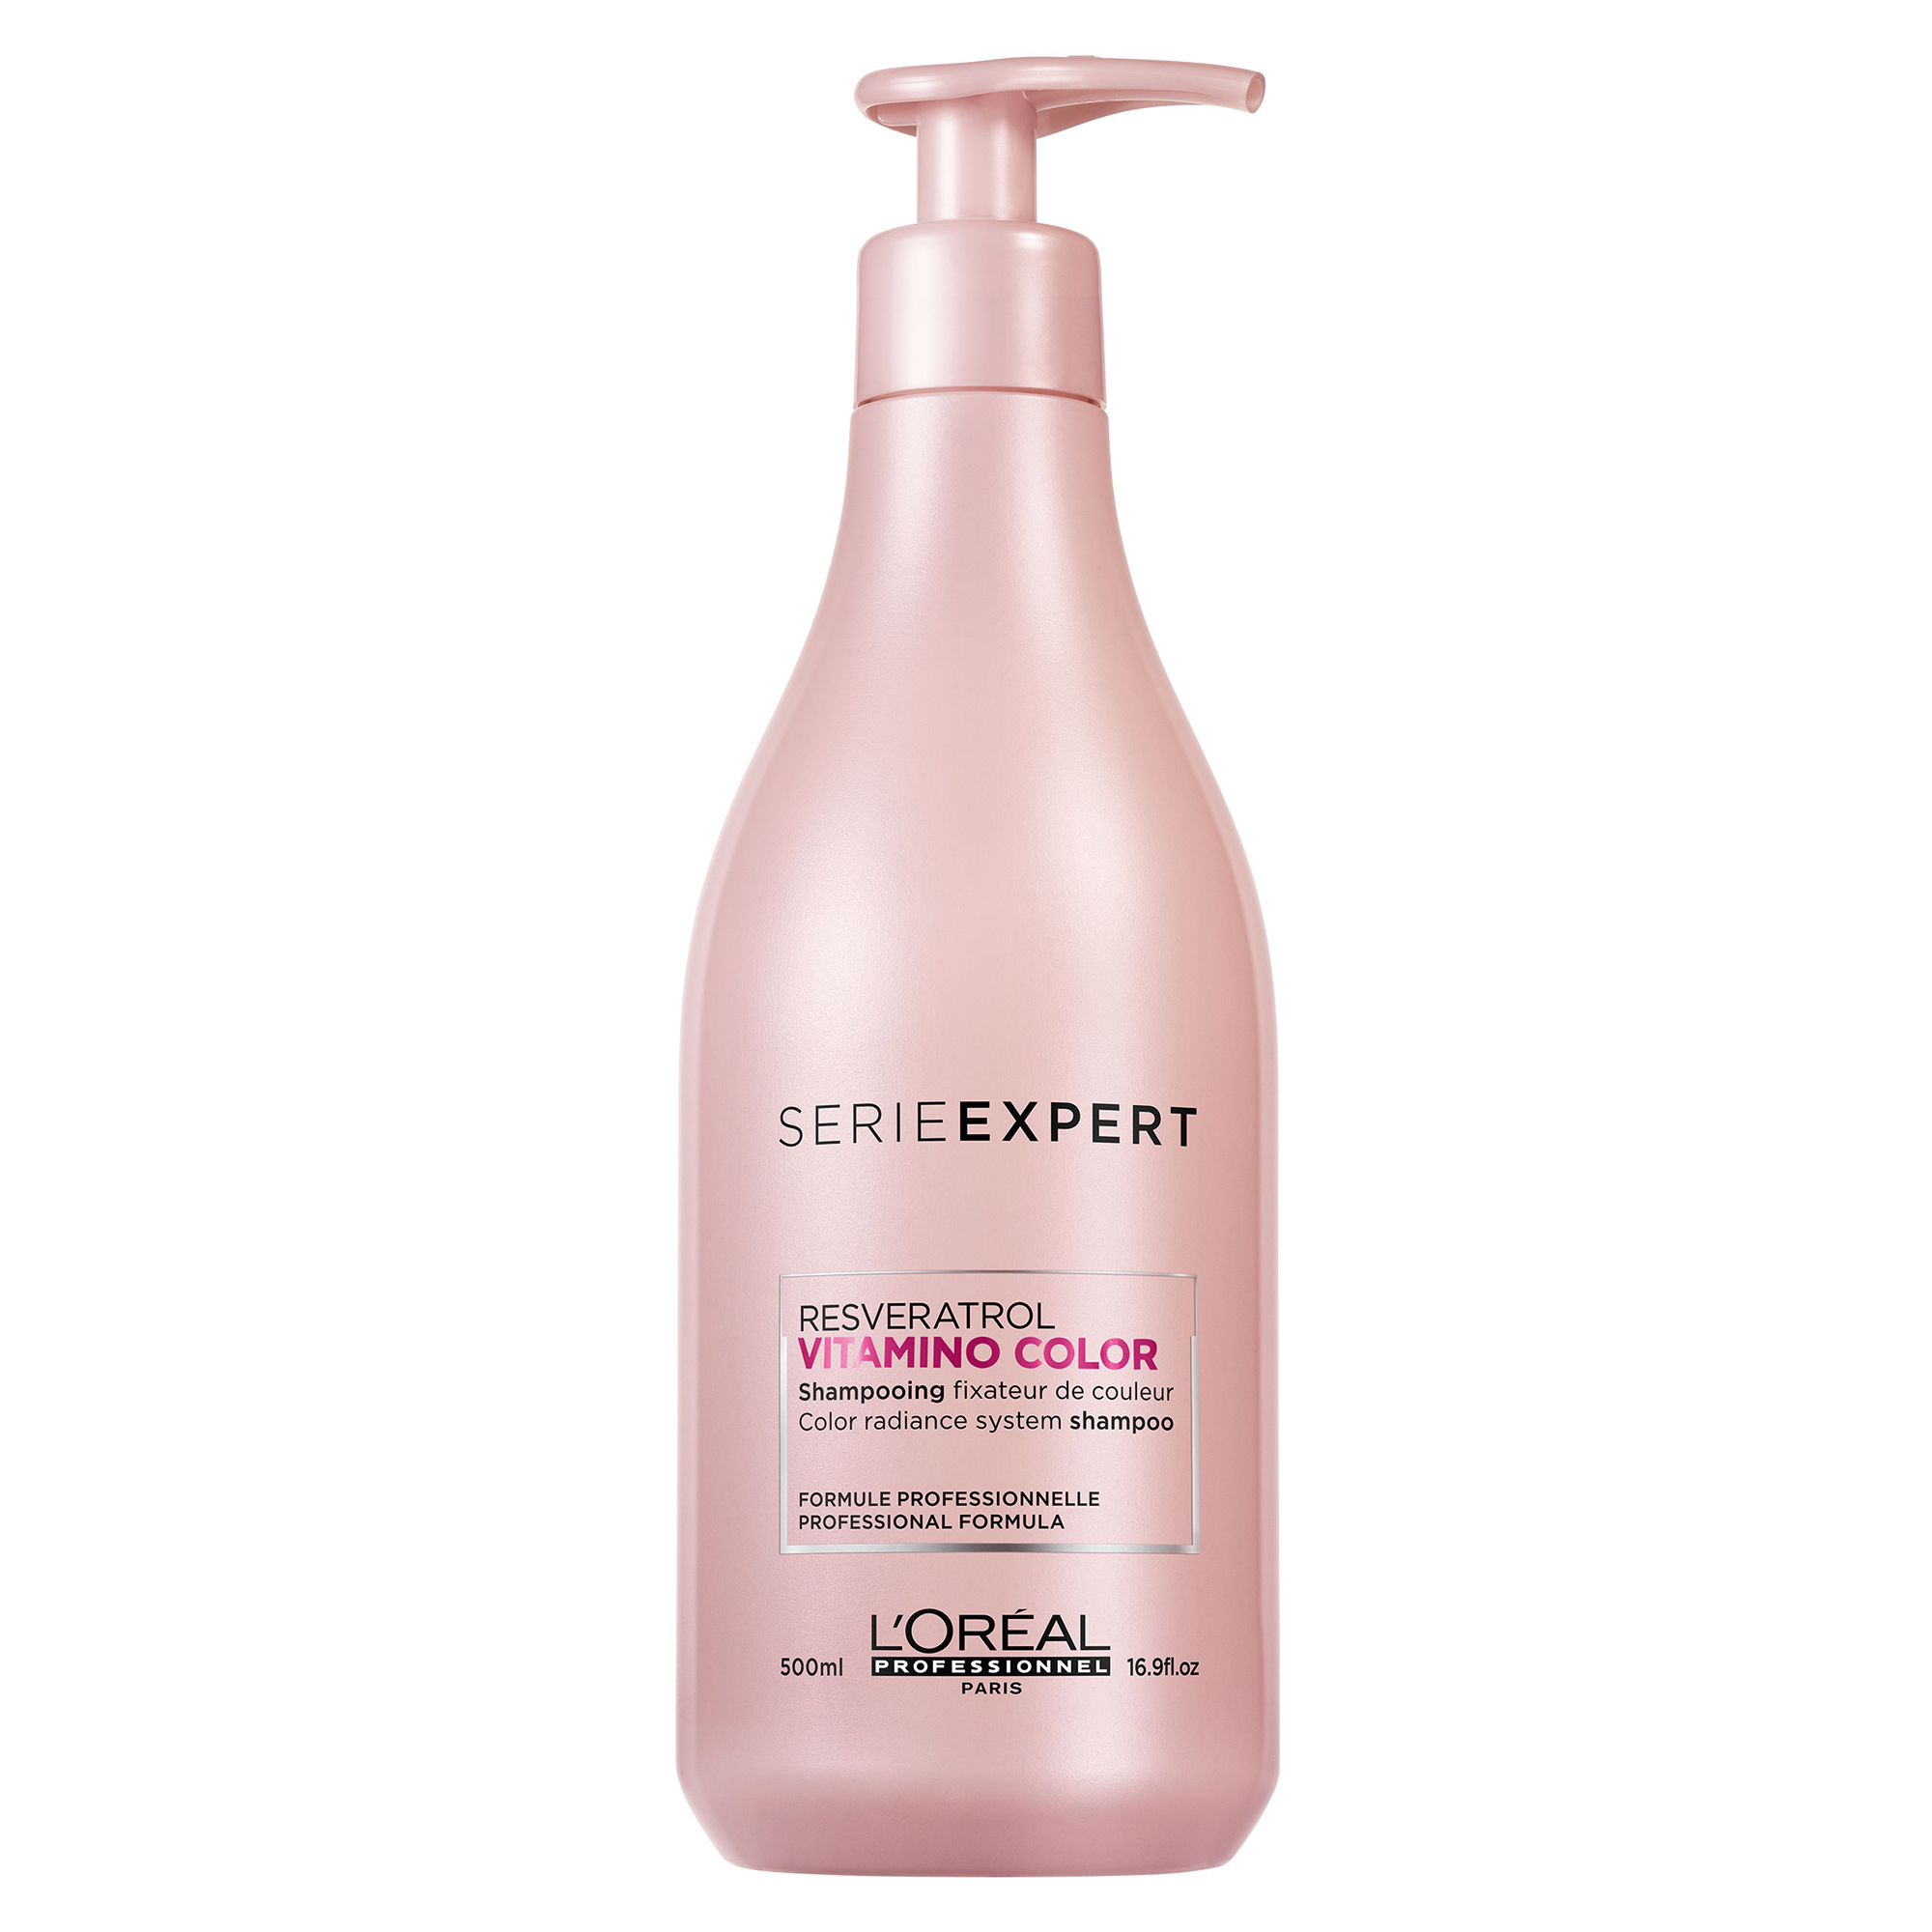 L'Oréal Professionnel LOrealProfessionnel Vitamino Color Shampoo, 500